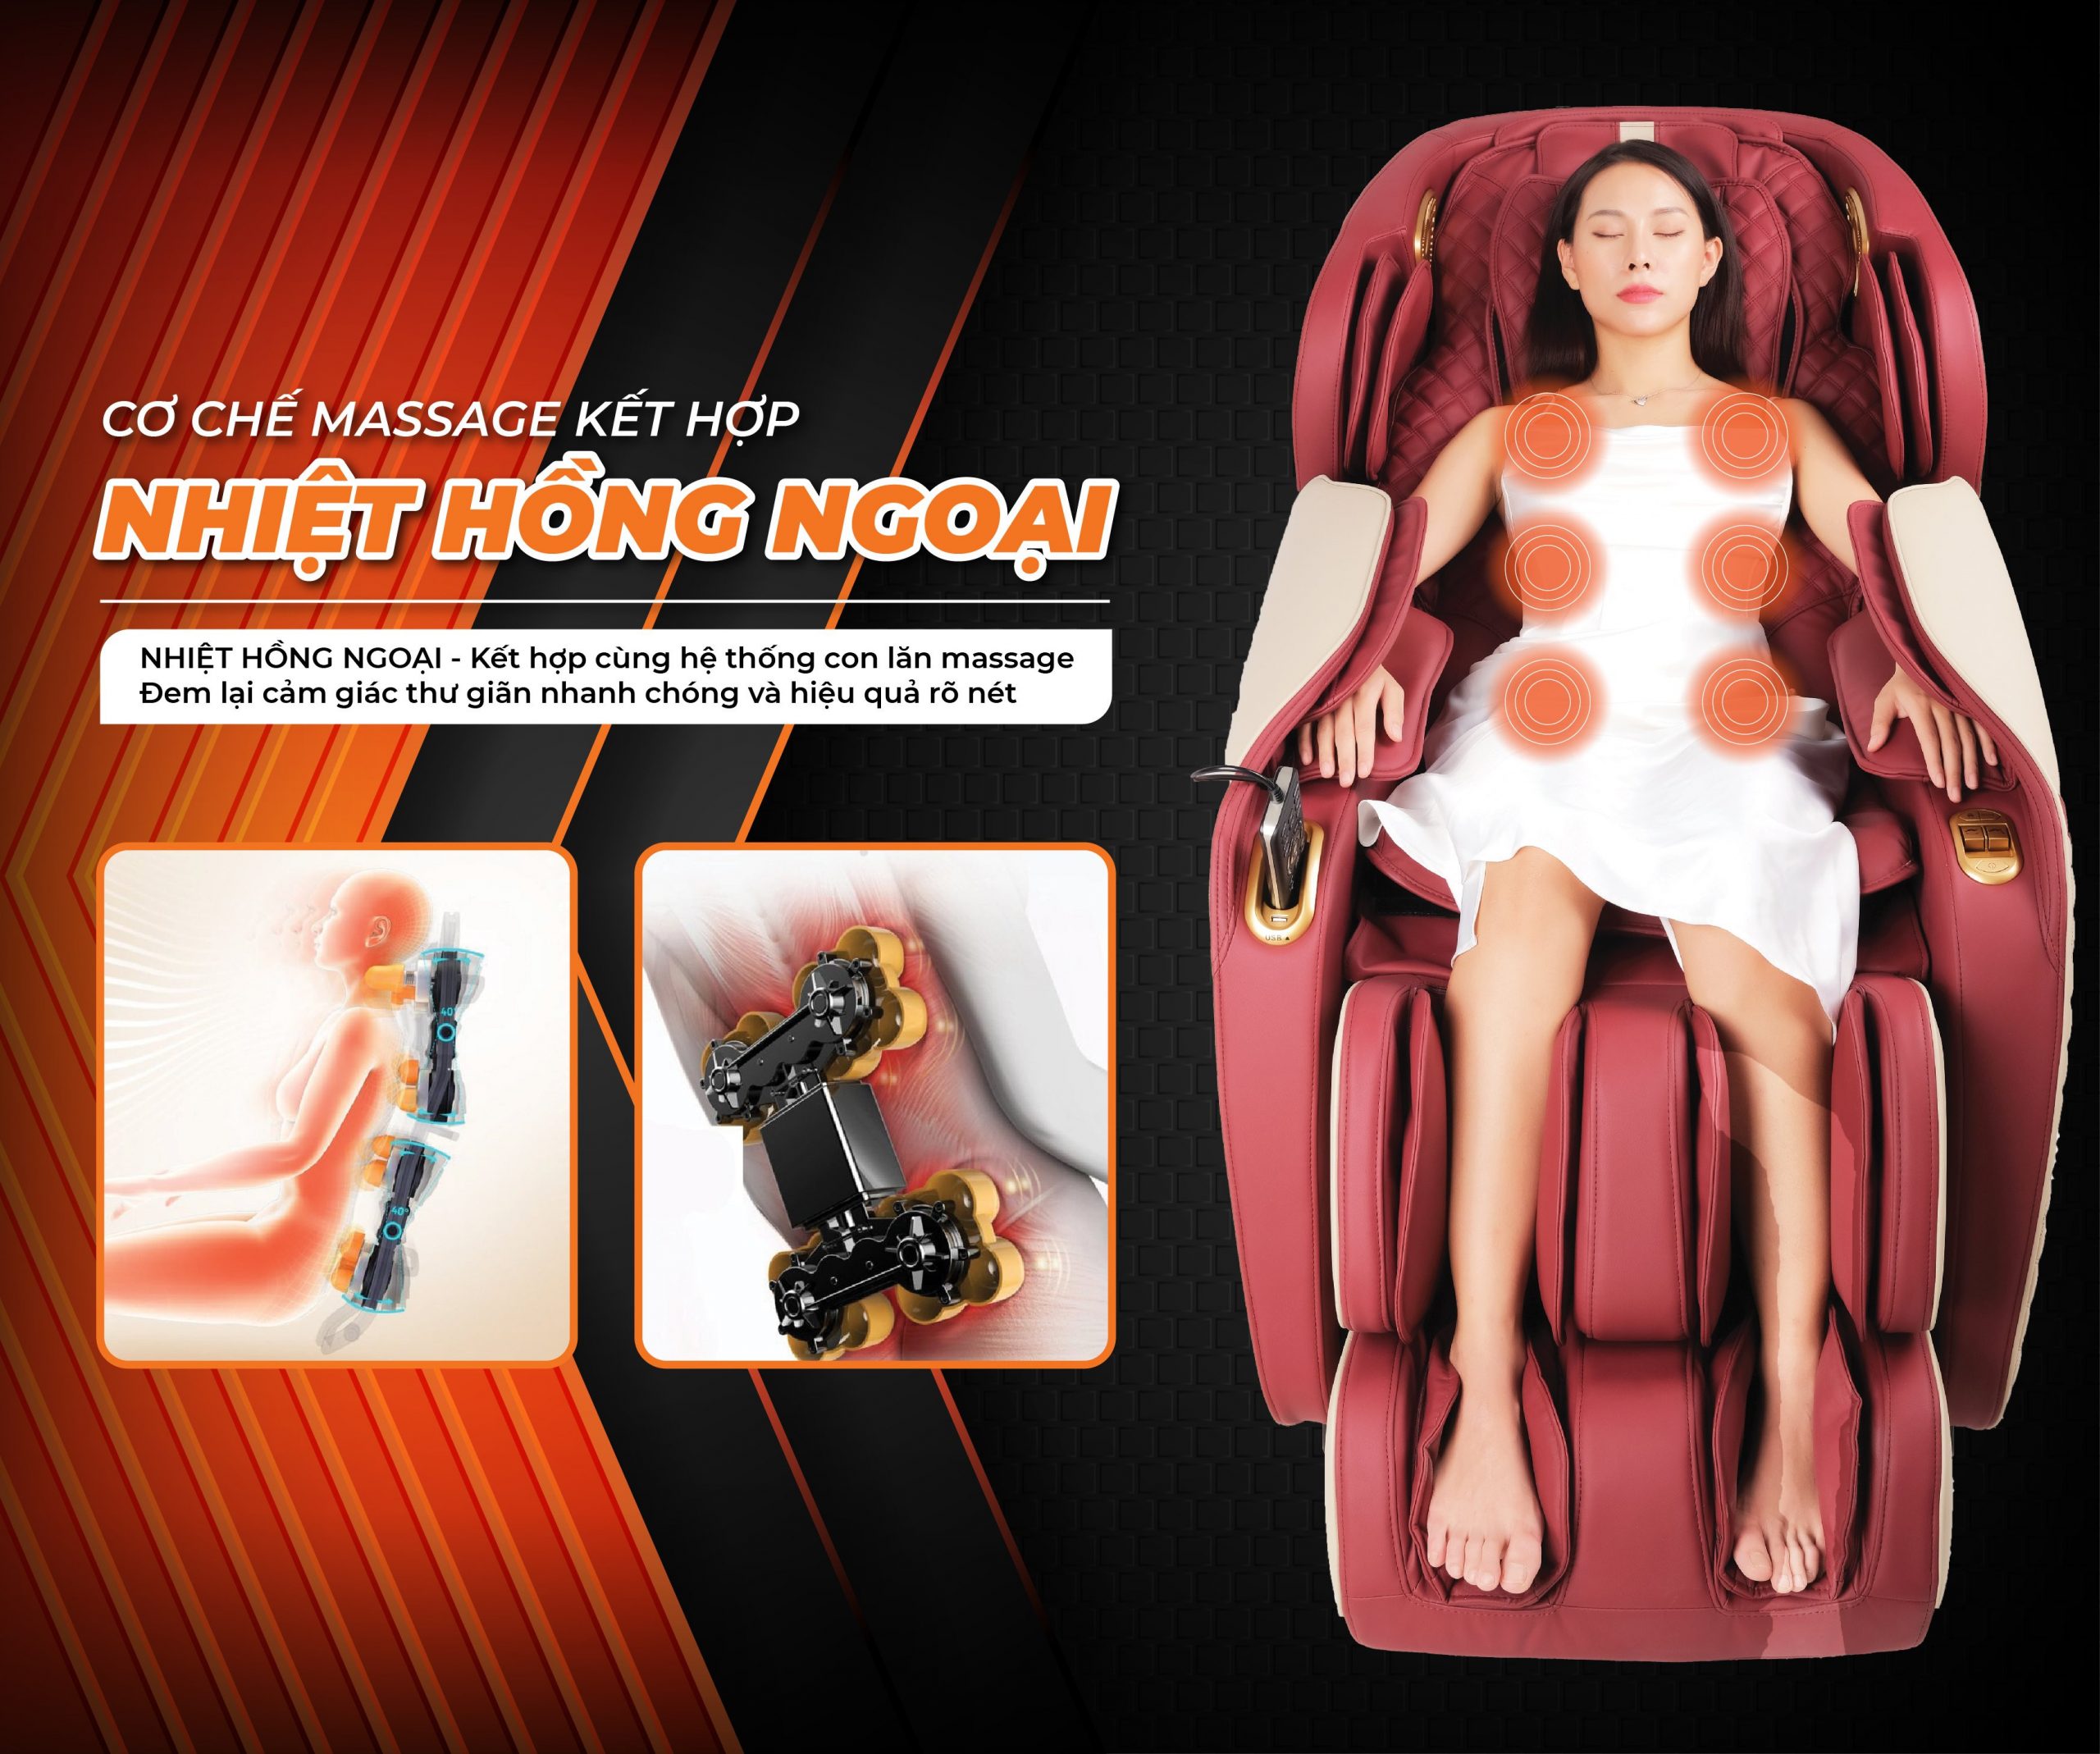 Ghế massage Washima với nhiều cơ chế massage nhiệt hồng ngoại hỗ trợ thúc đẩy quá trình lưu thông máu